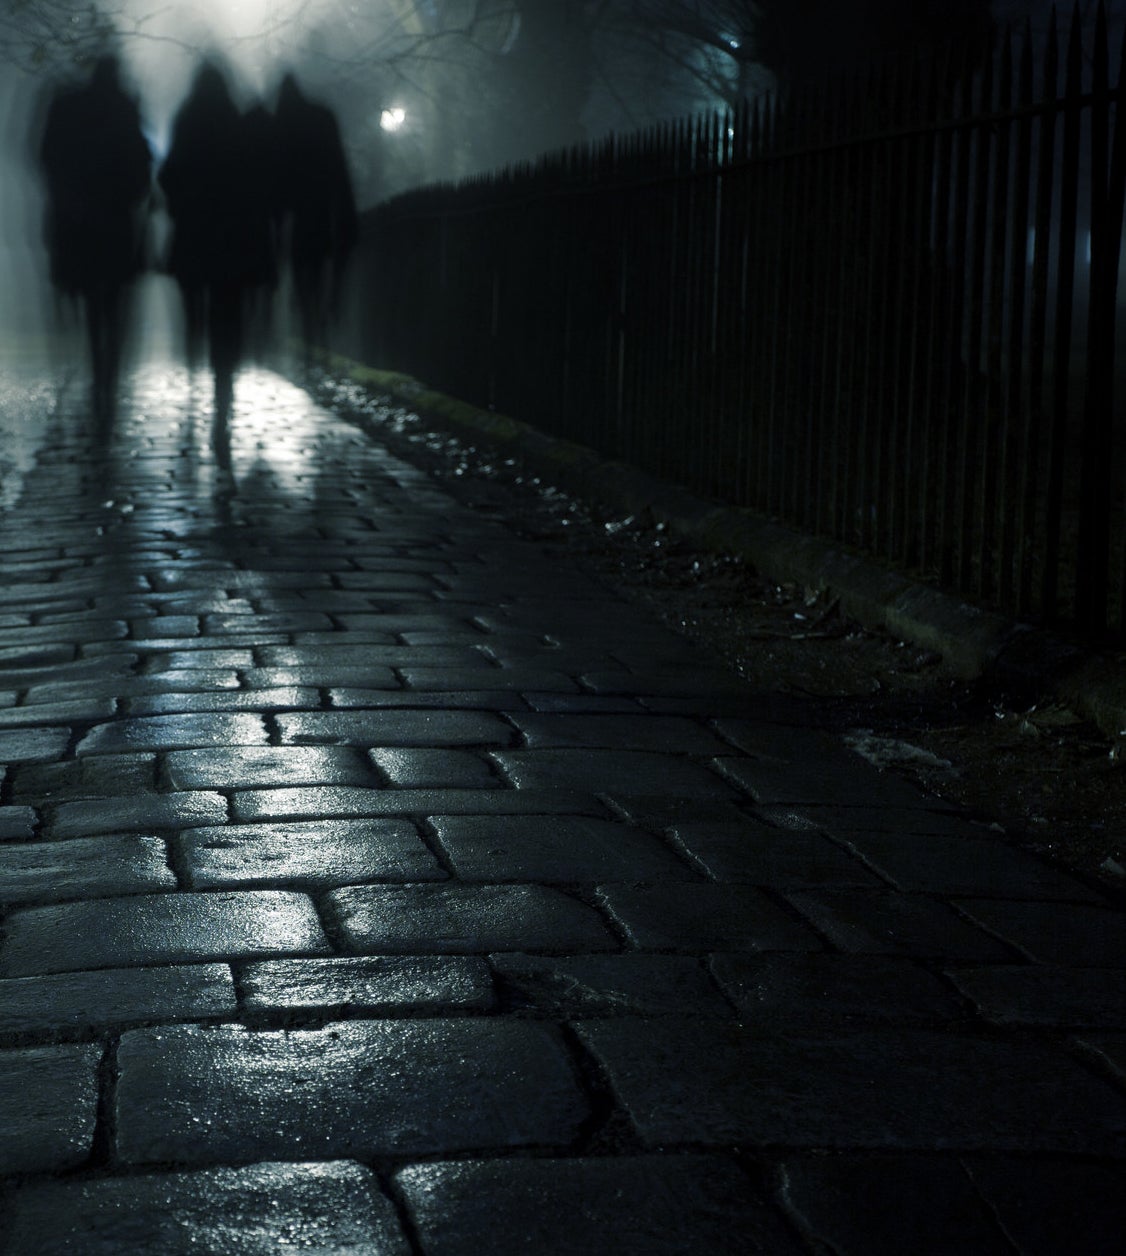 Three people walking on a dark sidewalk in the evening fog